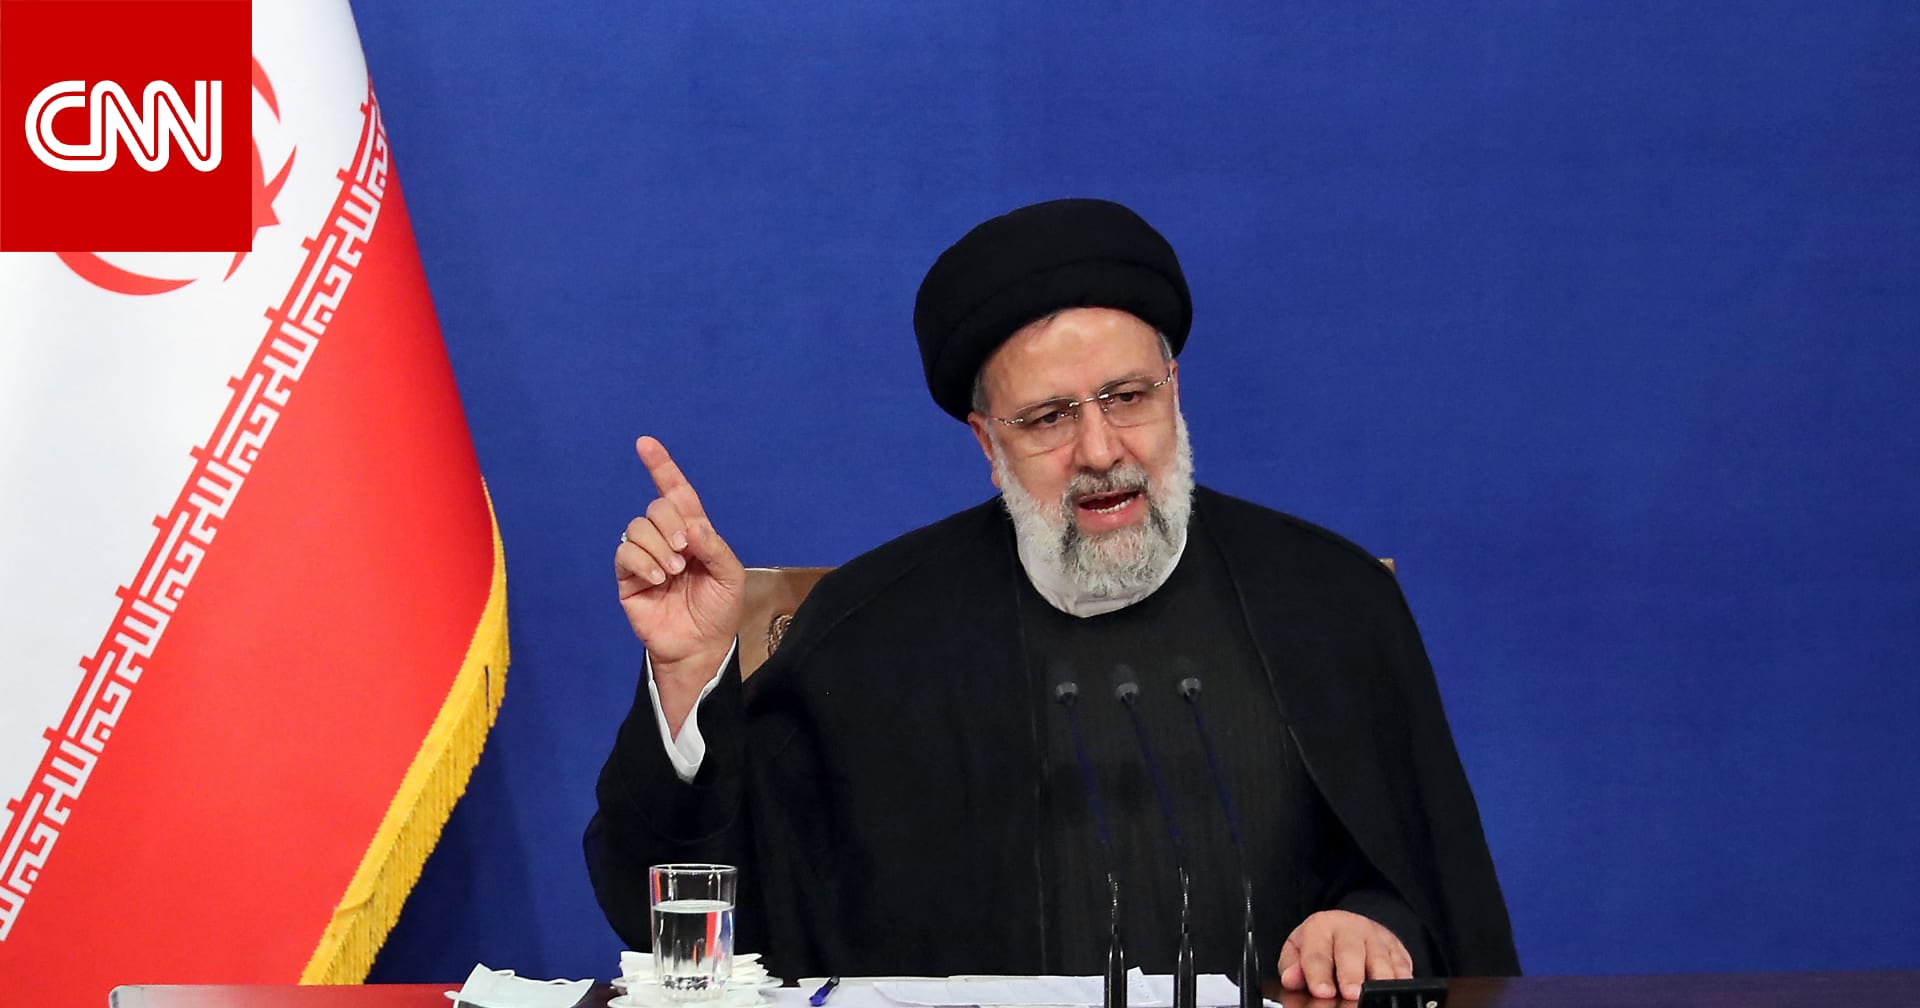 الرئيس الإيراني محذرًا إسرائيل: "أدني" هجوم سيتم التعامل معه "بشدة وصرامة"